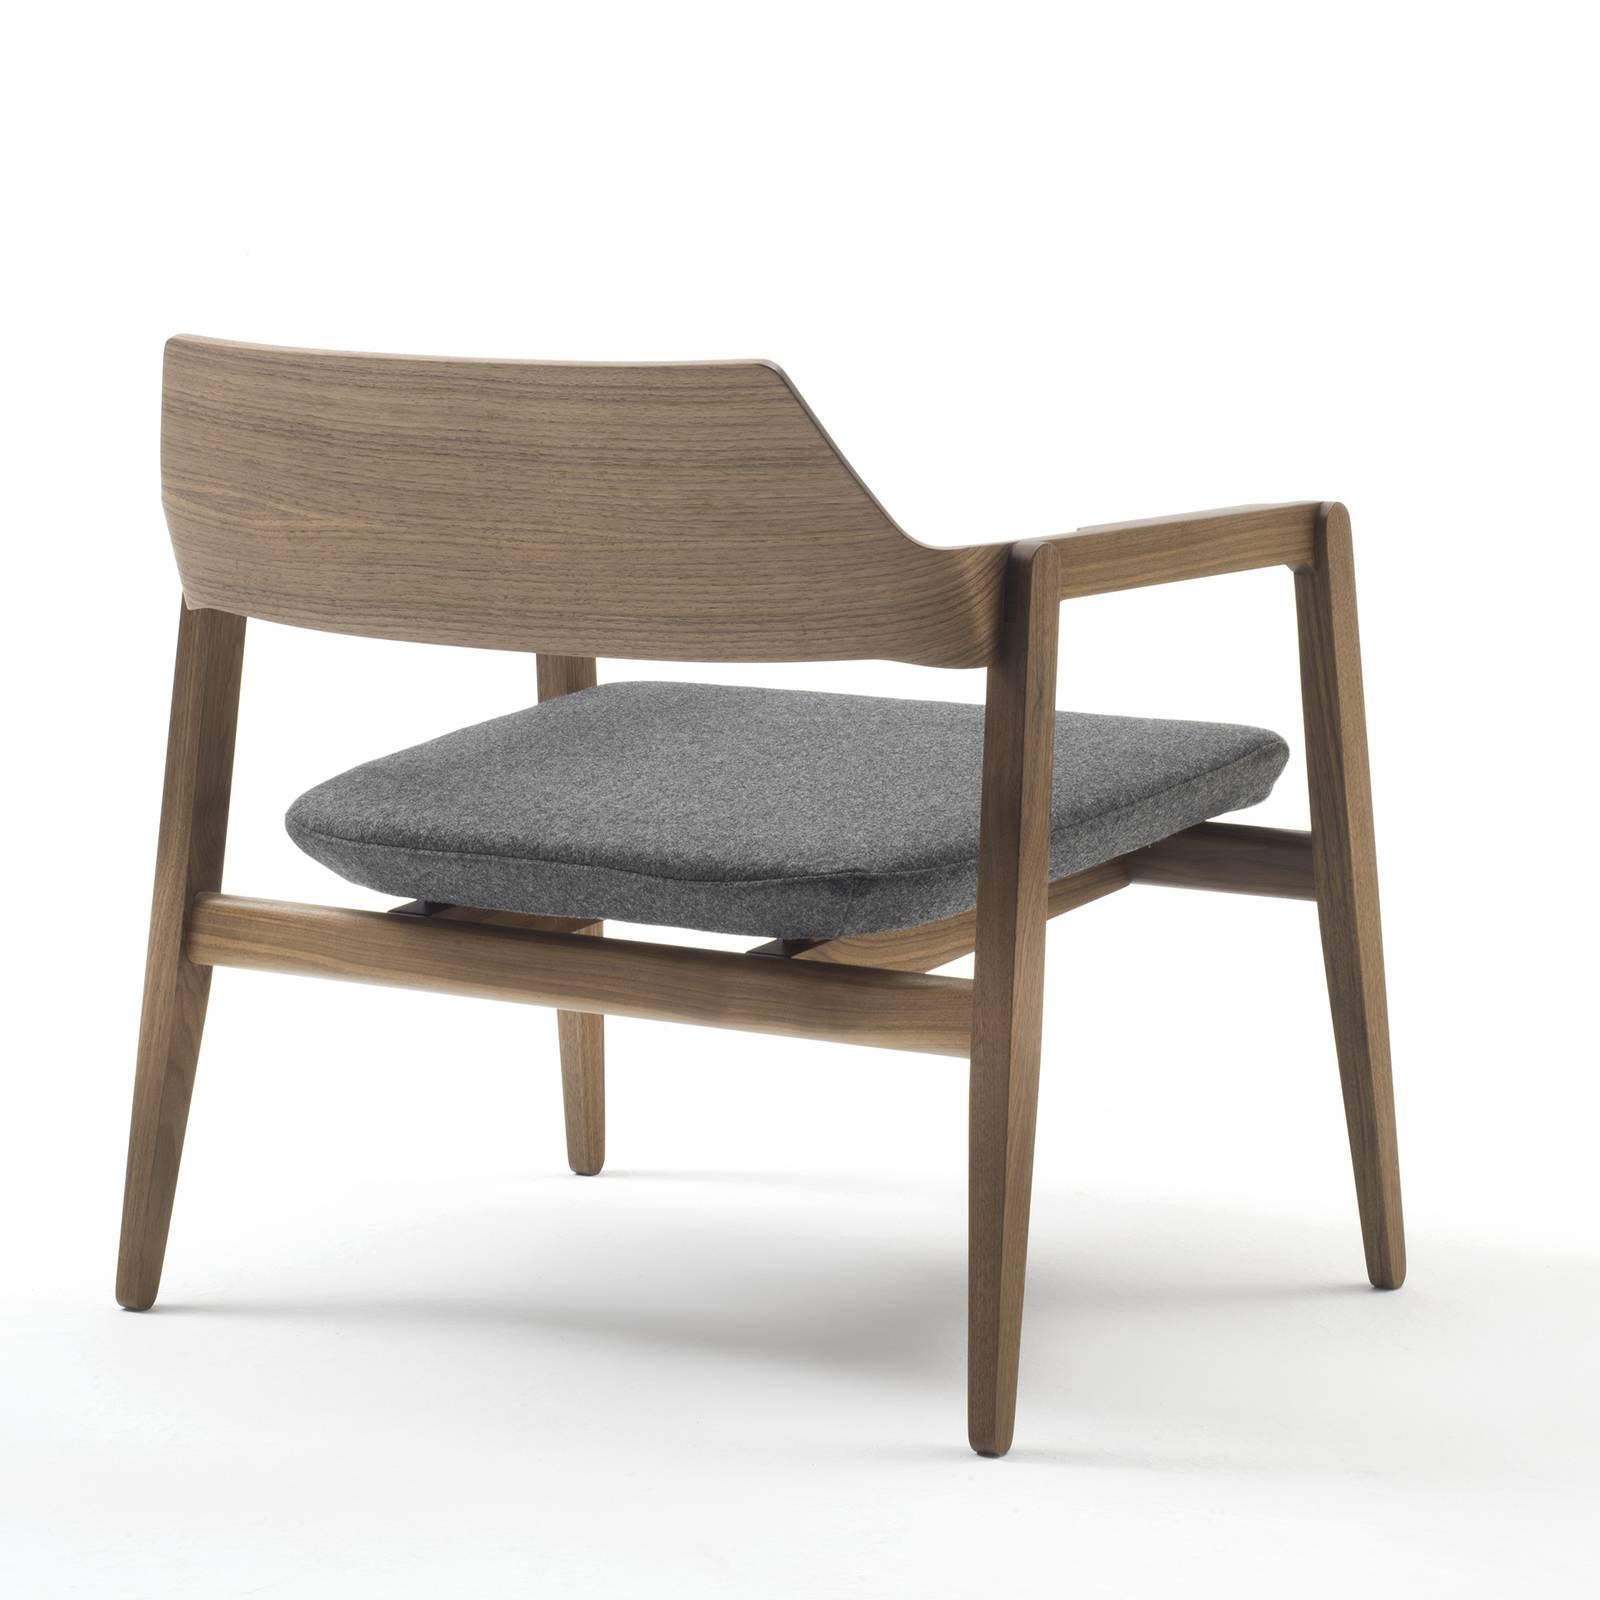 Dieser eklektische Sessel hat ein niedriges und bequemes Design mit einer geschwungenen Rückenlehne und einer weich gepolsterten Sitzfläche, die mit einem melangefarbenen Stoff von kvadrat bezogen ist. Das Gestell ist aus massiver Eiche mit